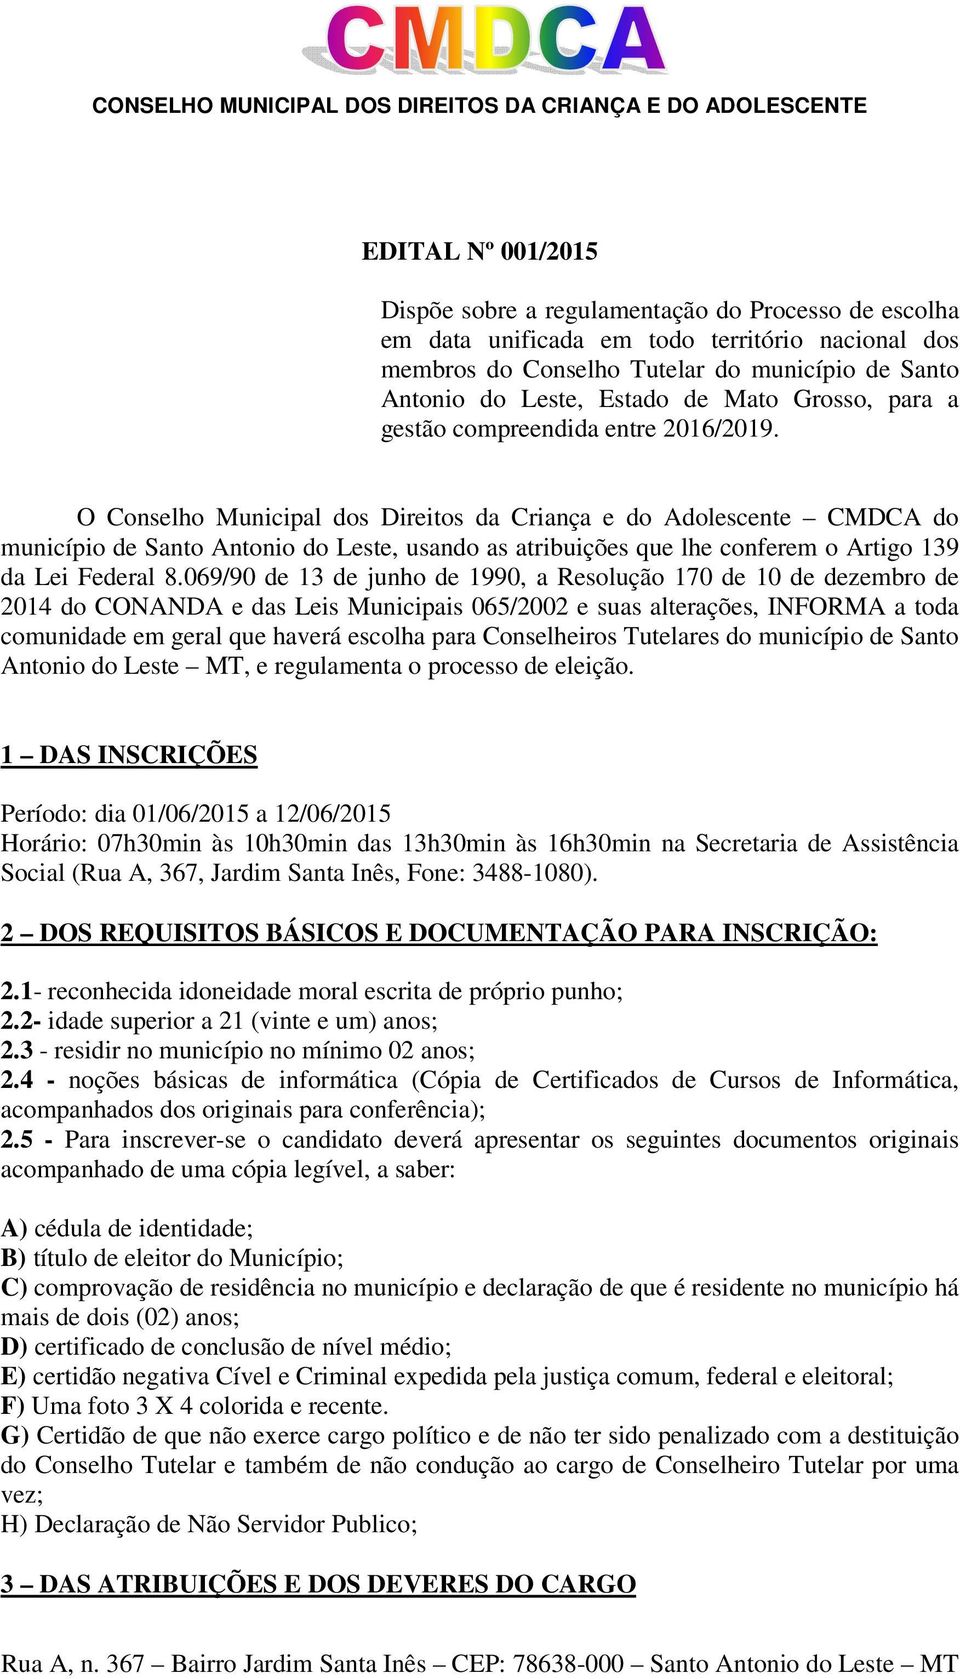 O Conselho Municipal dos Direitos da Criança e do Adolescente CMDCA do município de Santo Antonio do Leste, usando as atribuições que lhe conferem o Artigo 139 da Lei Federal 8.